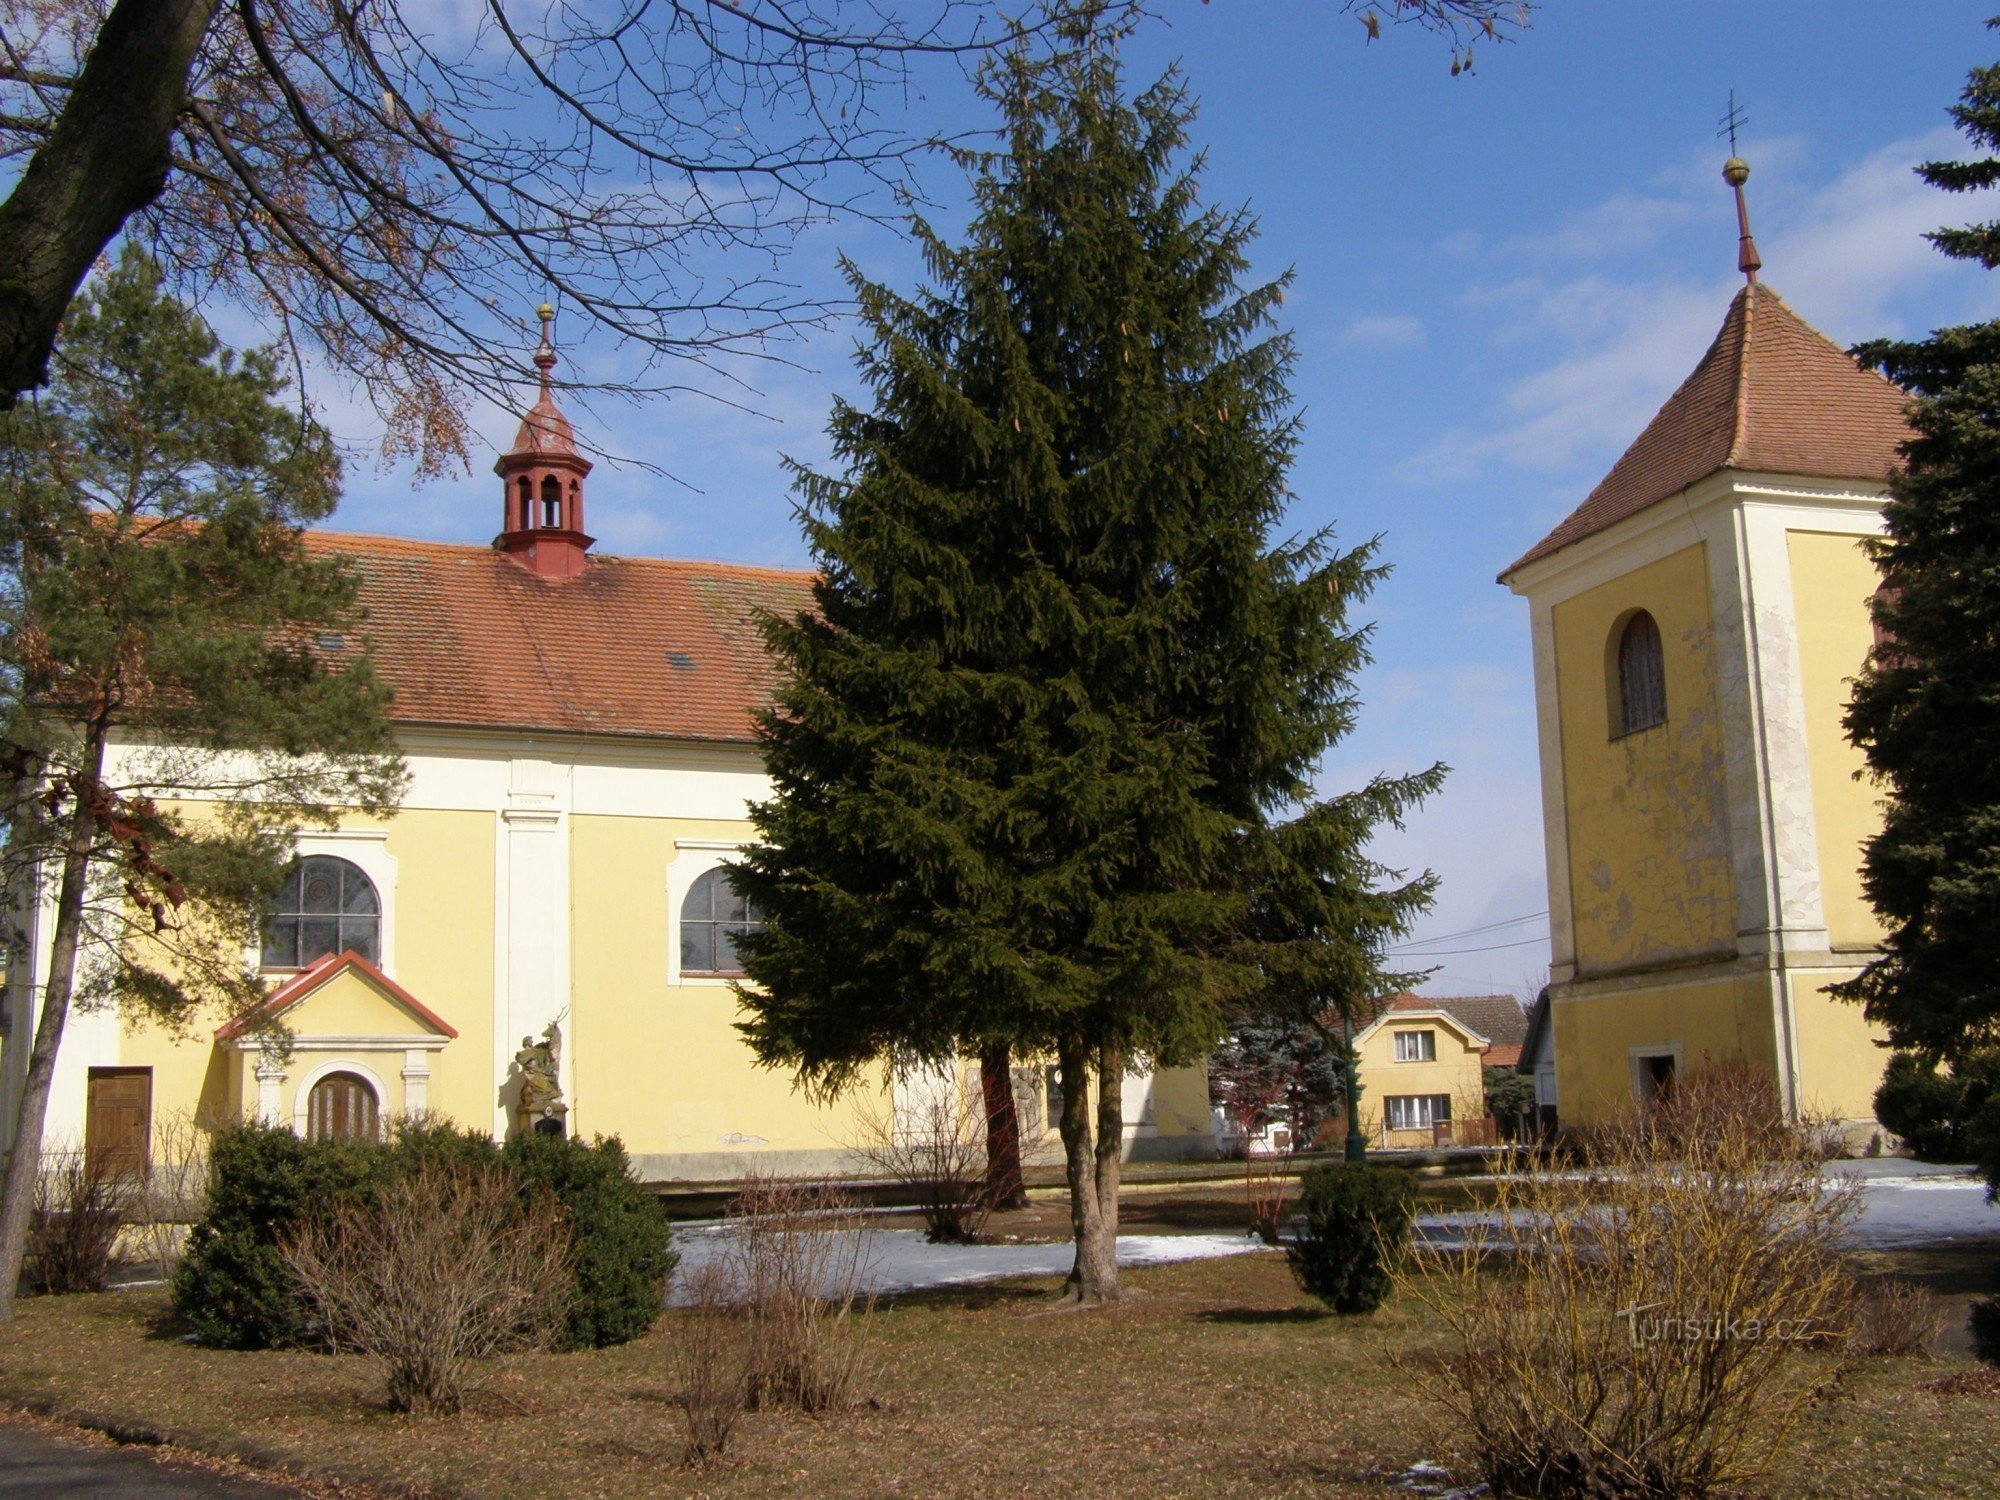 ロヴチツェ - 聖教会鐘楼を持つバーソロミュー